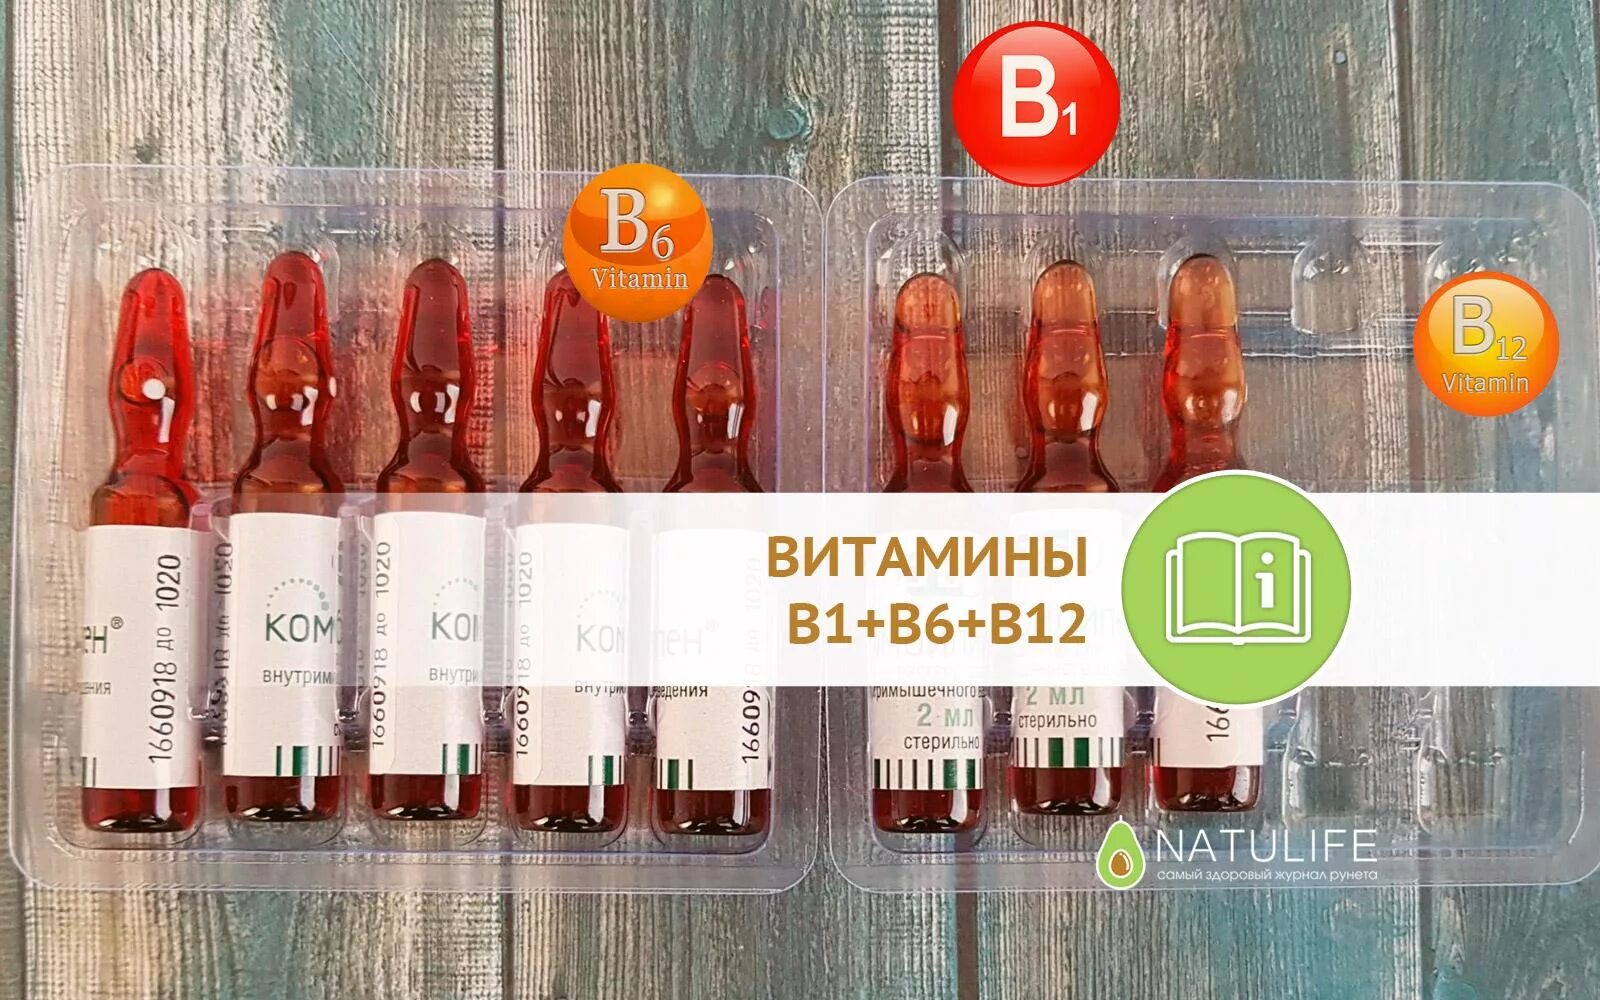 Витамины б1 б6 уколы. Комплекс витаминов б1 б6 б12 в ампулах. B1 b6 b12 витамины в ампулах JN pfgjz. Комплекс б1 б6 б12 уколы витамины.